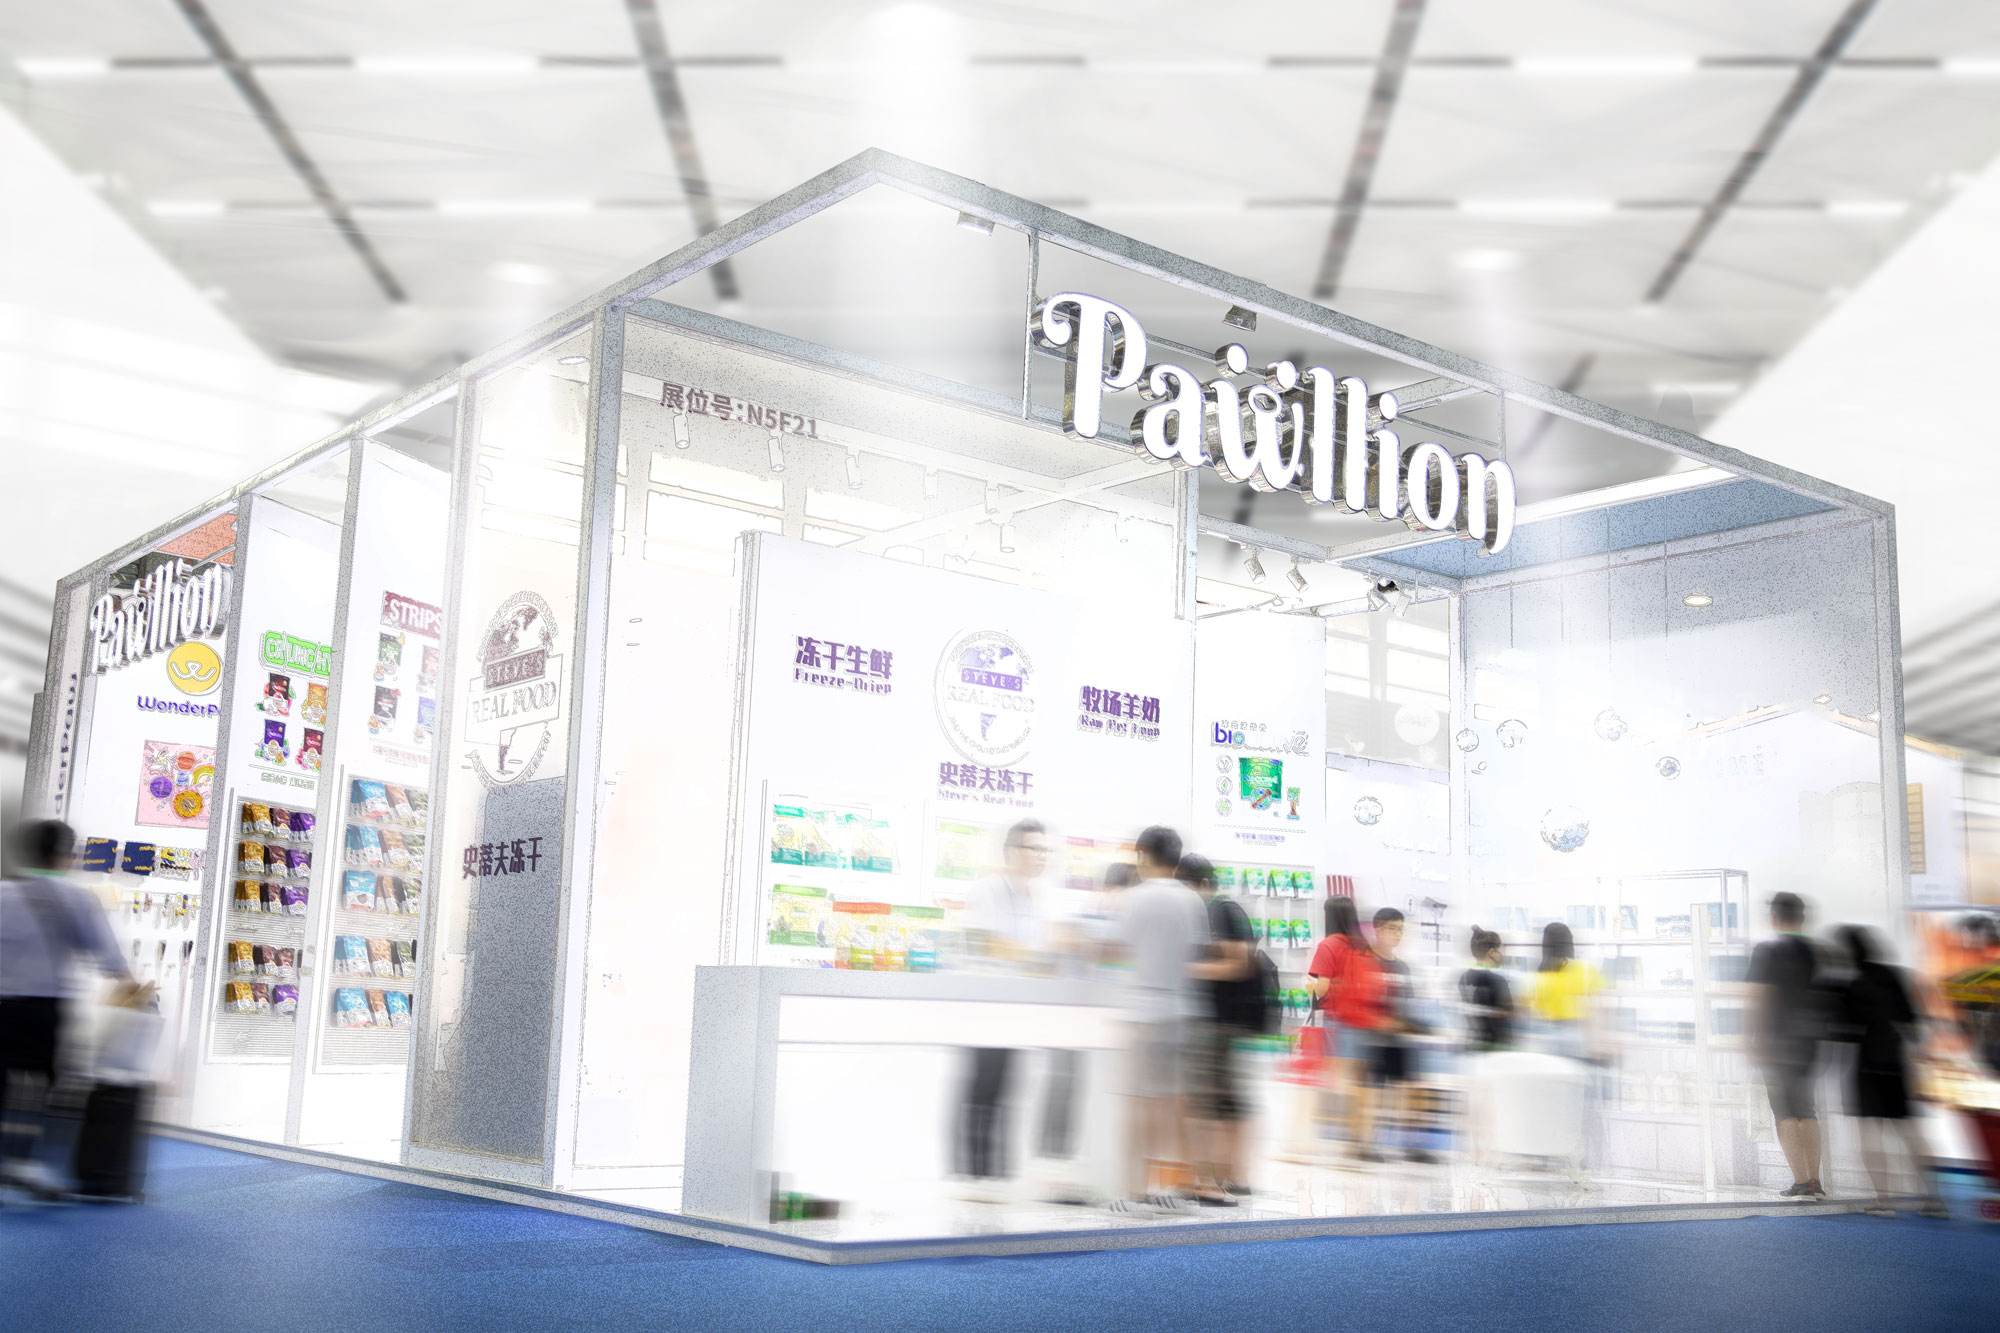 Pawllion exhibited in 2019 Pet Fair Asia